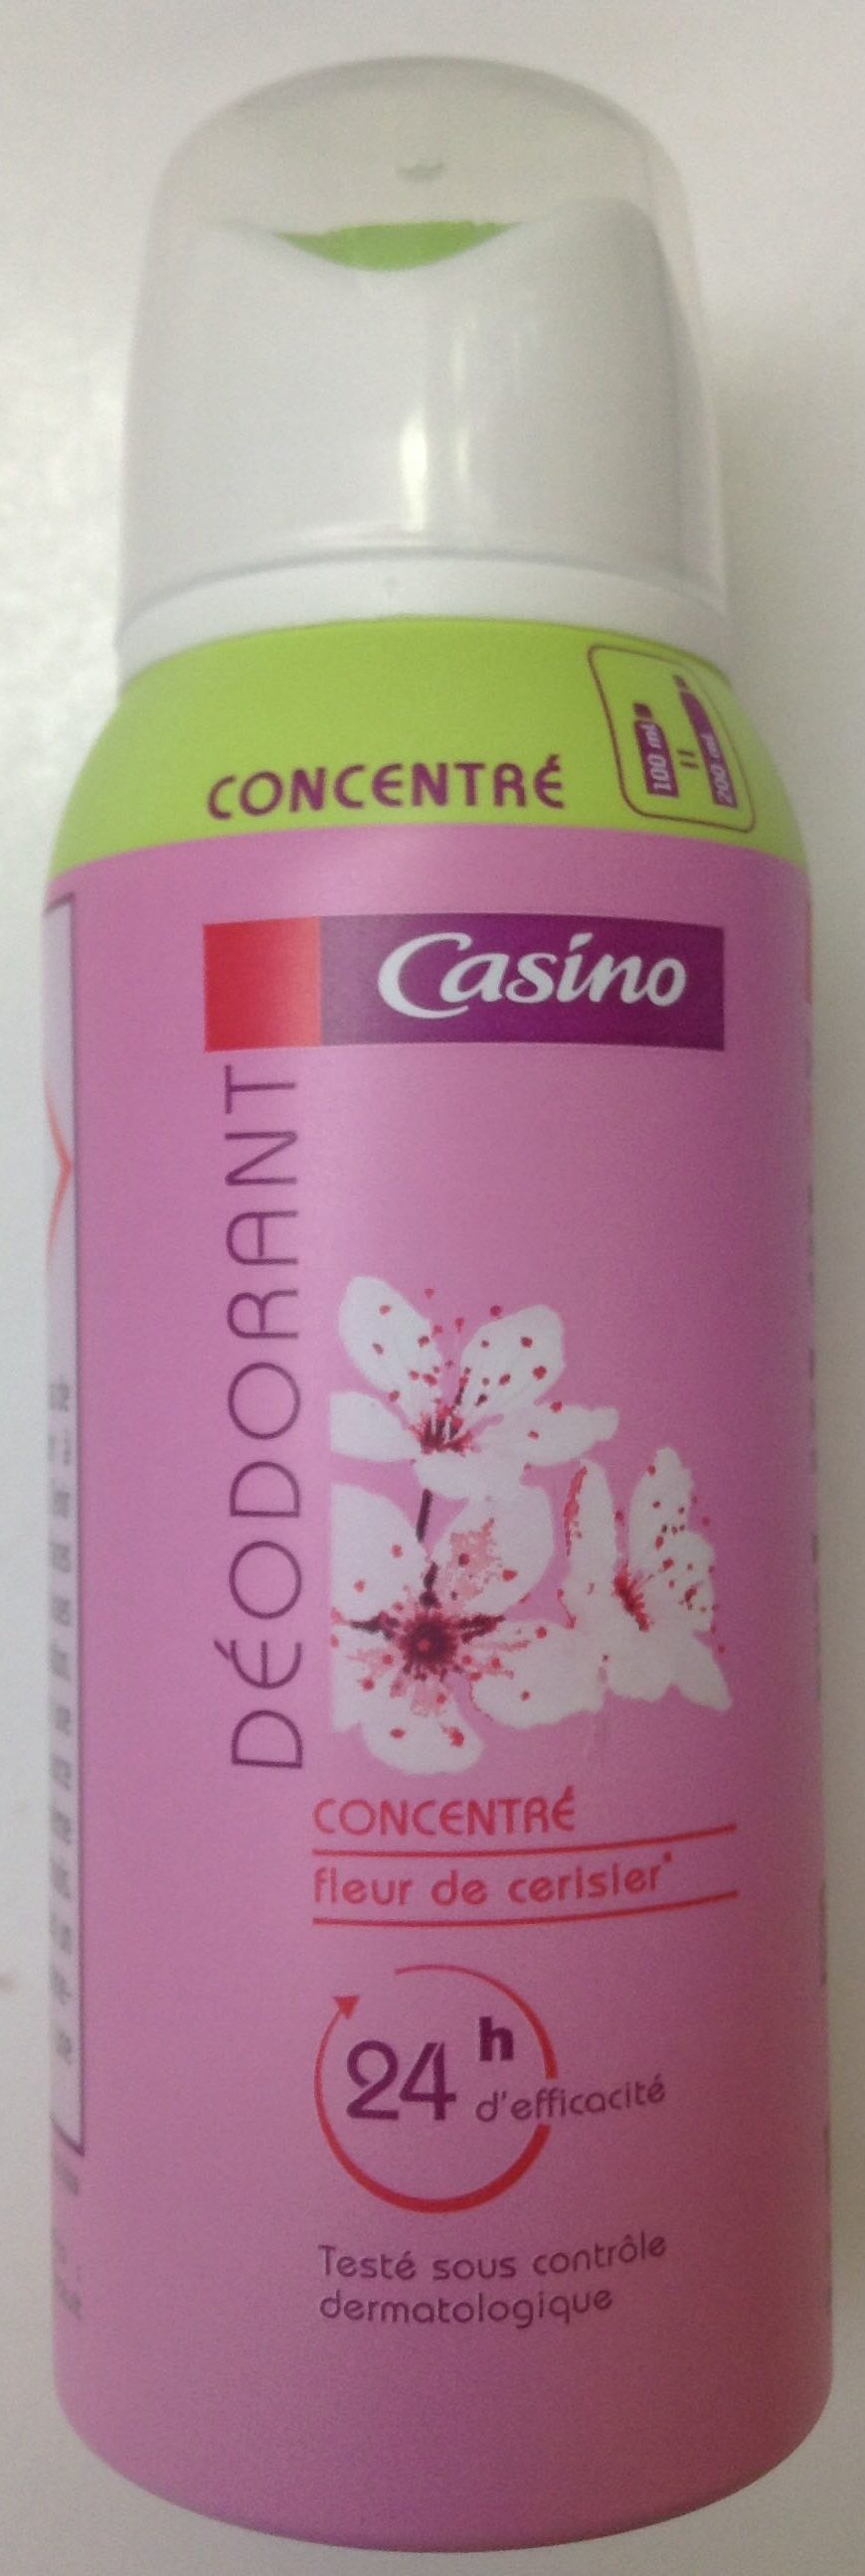 Déodorant concentré fleur de cerisier 24H - Product - fr